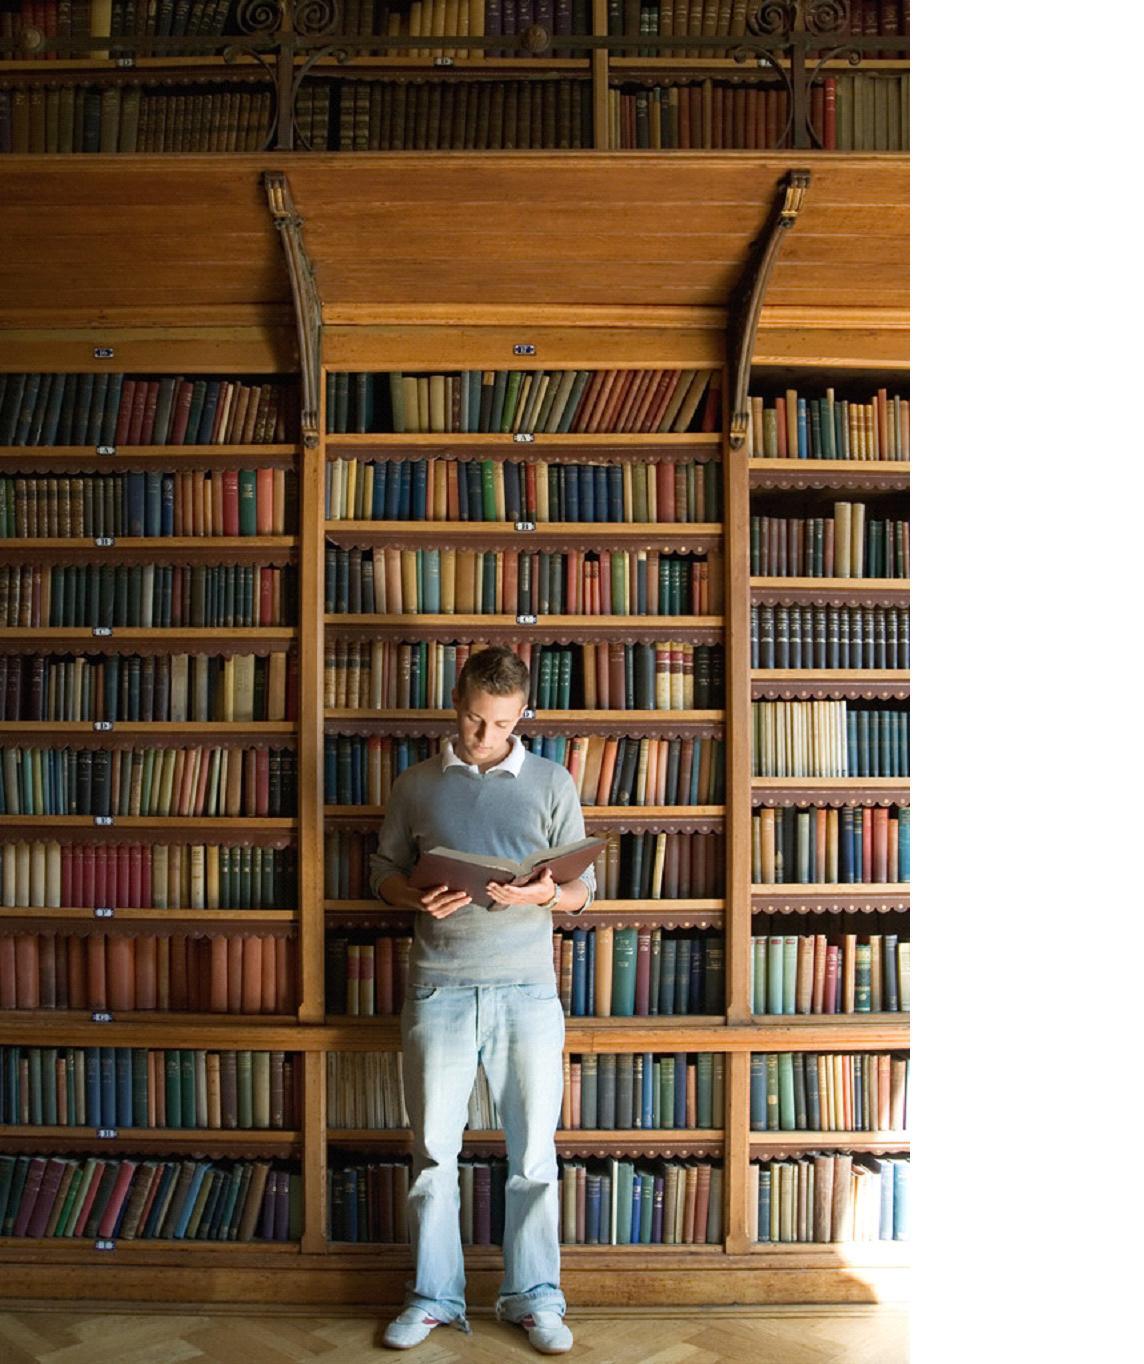 Скриптолог. Люди в библиотеке. Человек с книгой в библиотеке. Много книг. Фотосессия в библиотеке.